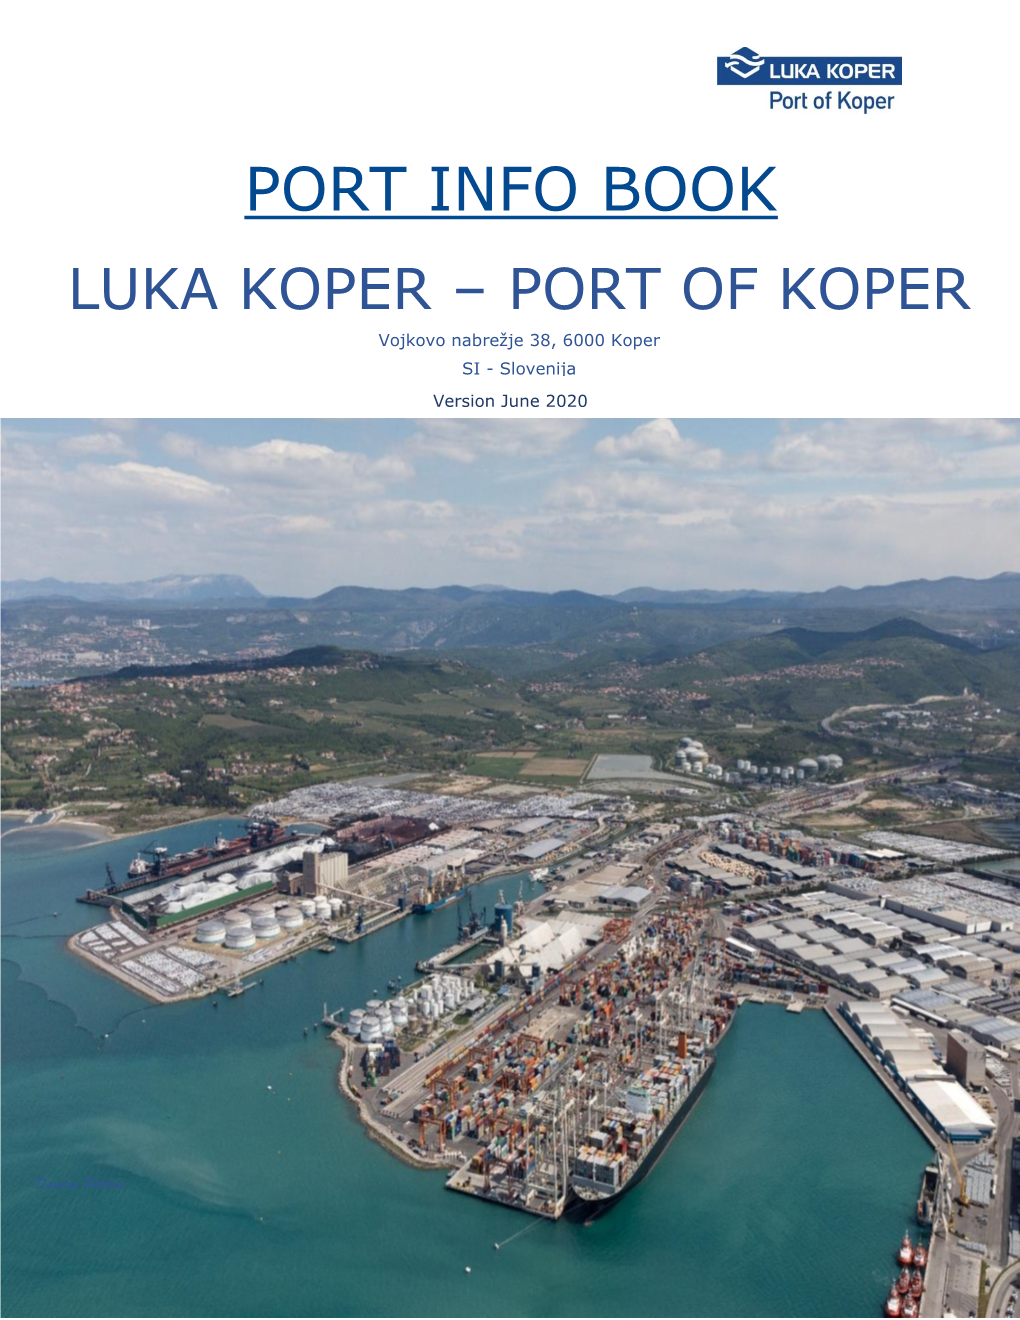 Port Information Book .Pdf, 892 KB